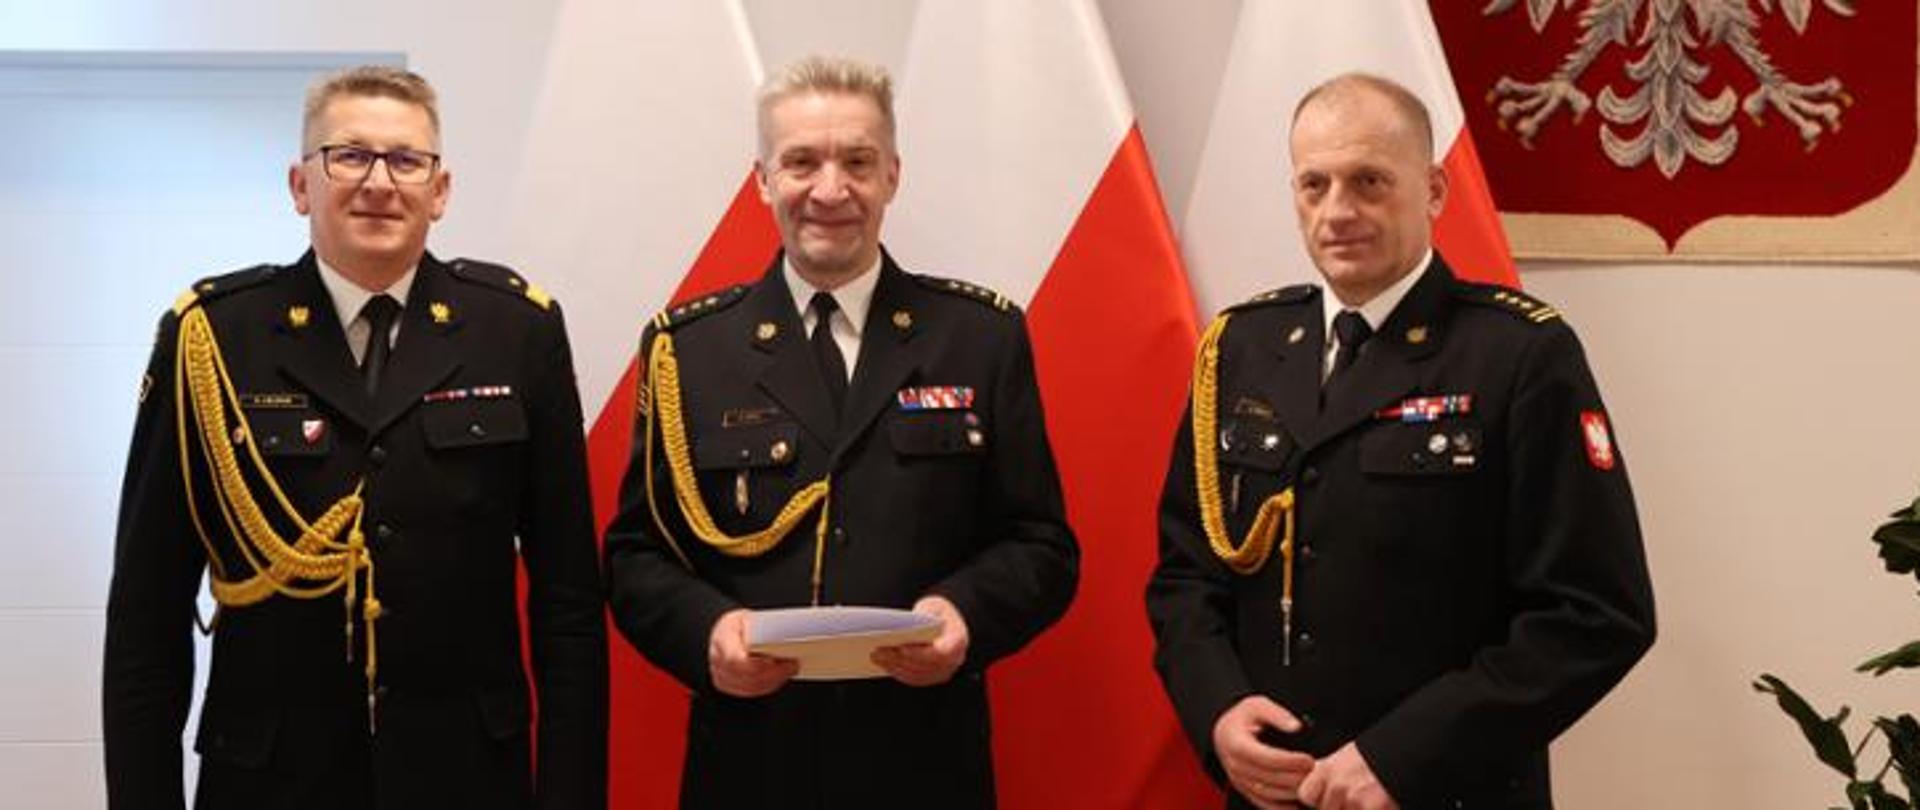 Na zdjęciu trzech funkcjonariuszy w umundurowaniu galowym ze sznurami pozuje do zdjęcia na tle biało czerwonych flag oraz godła Polski.